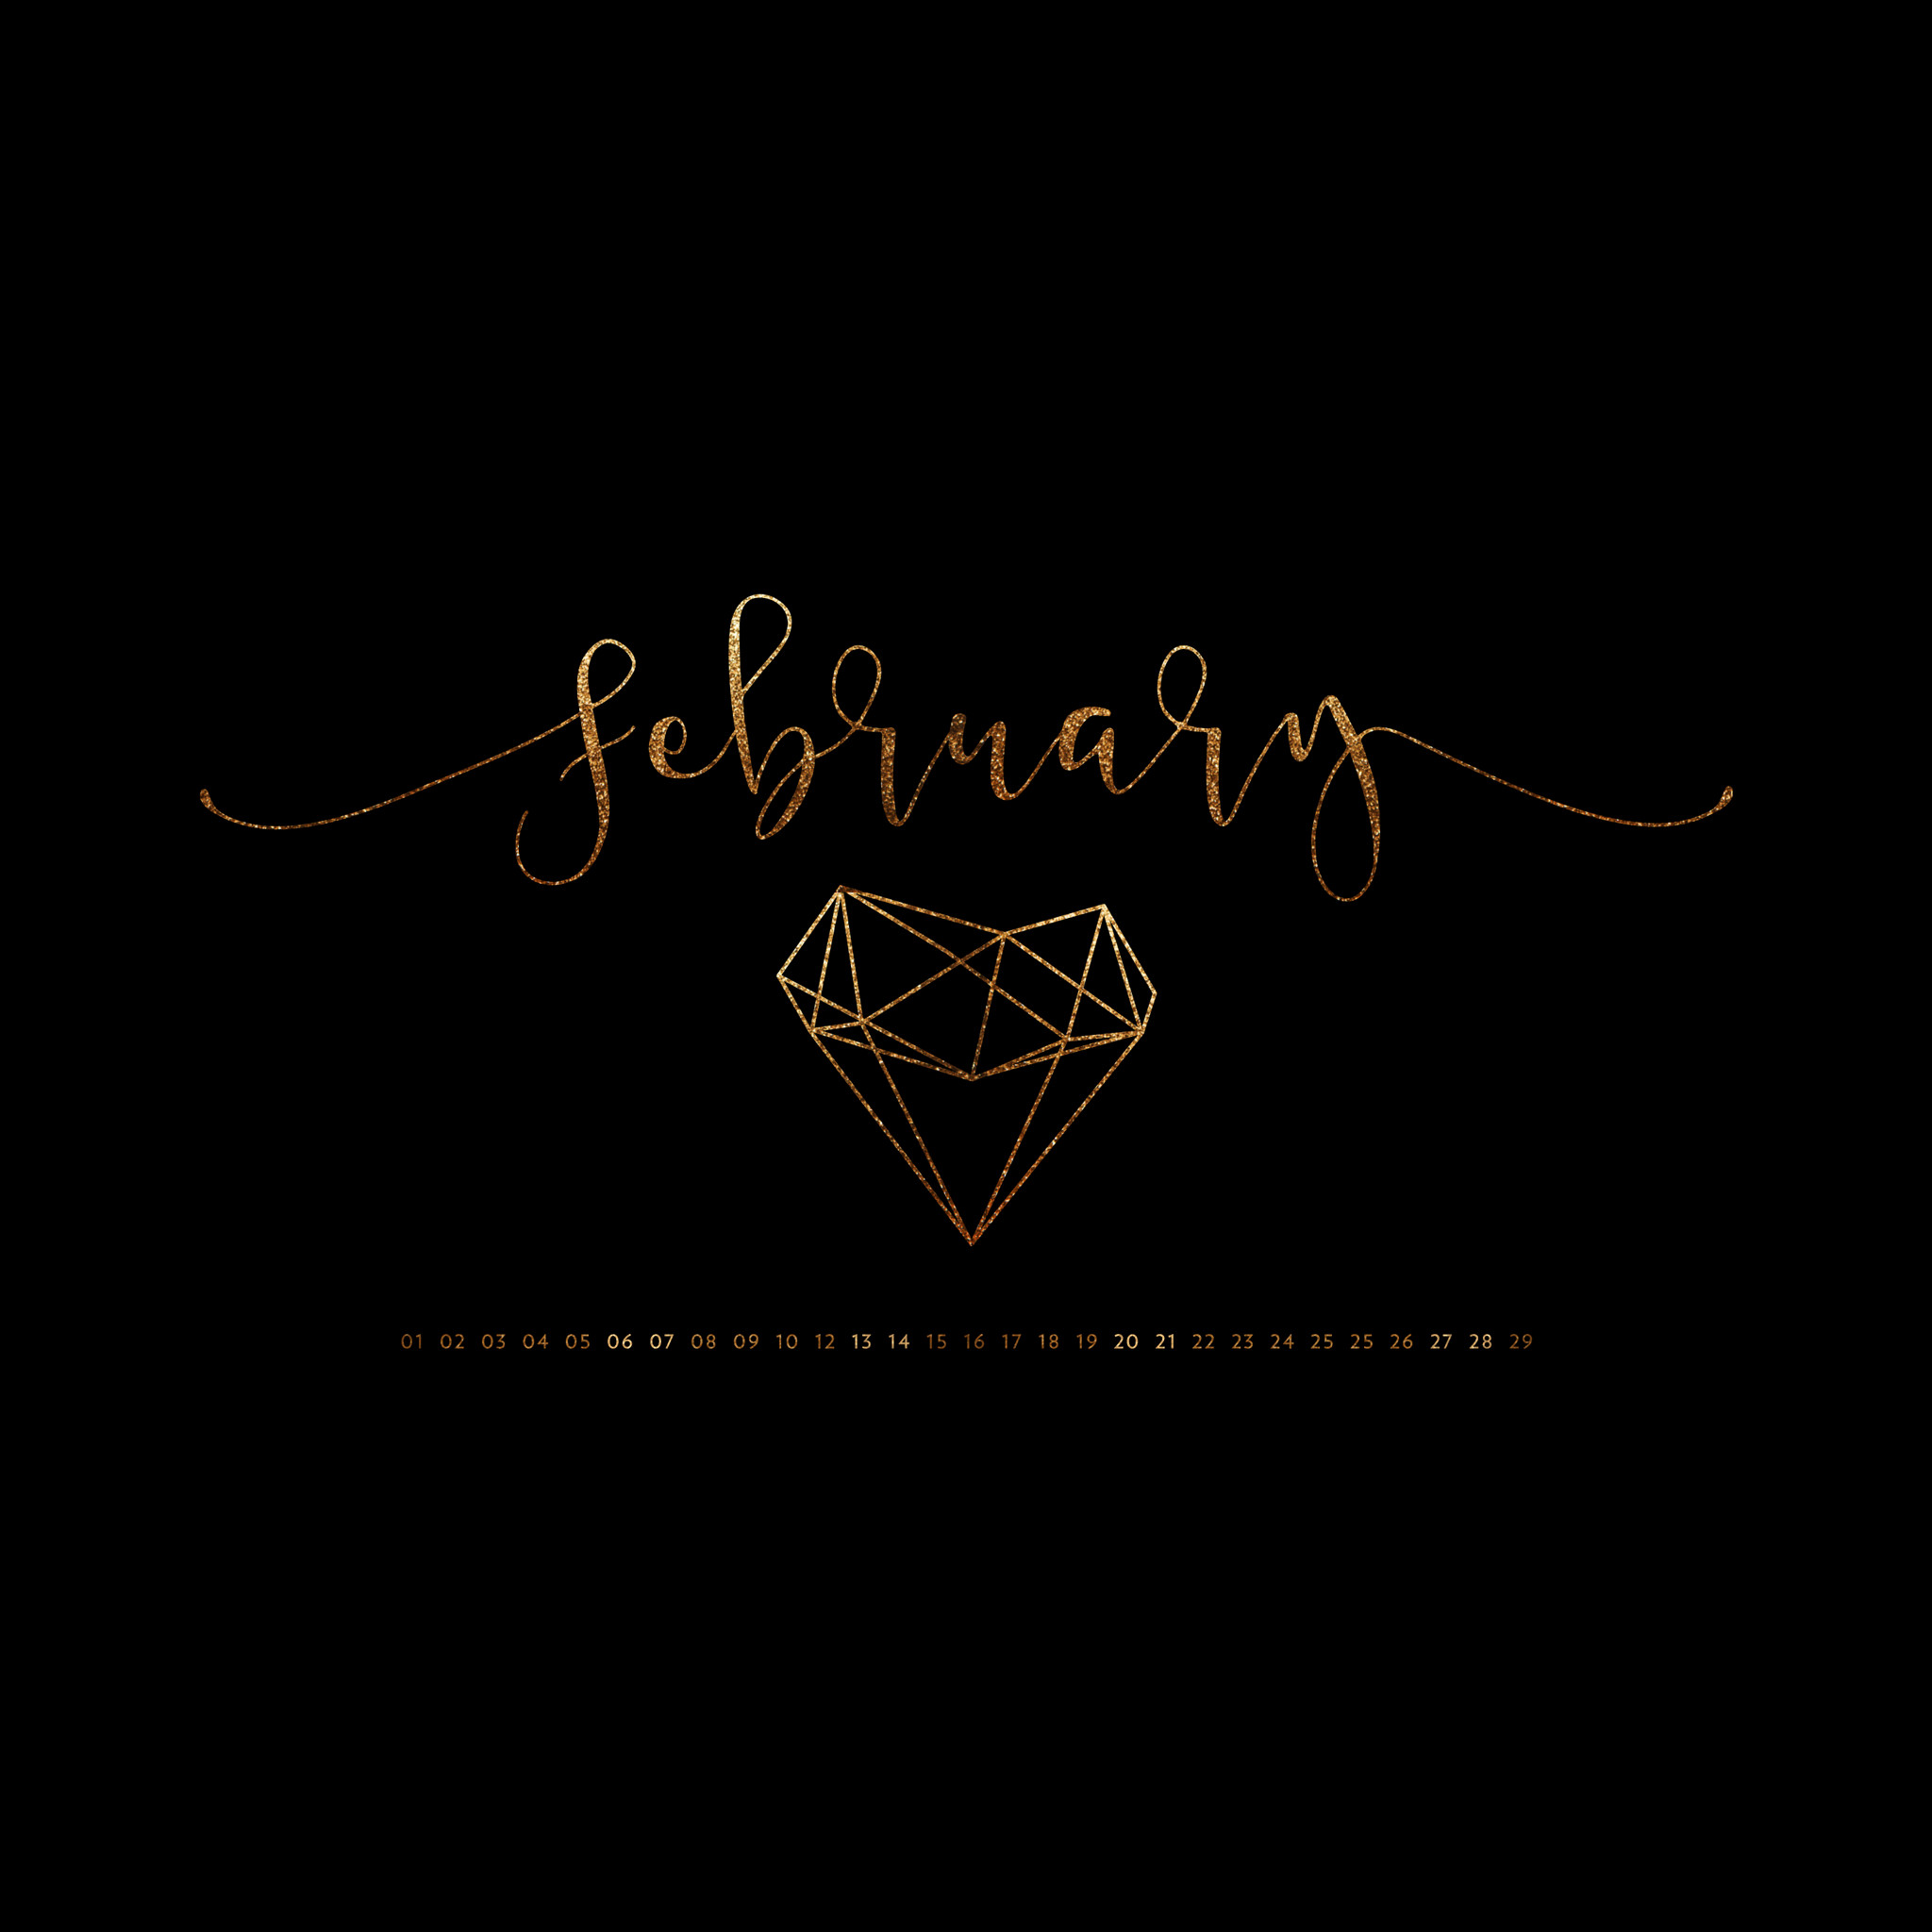 2048x2048 February 2016 Desktop Calendar Wallpaper